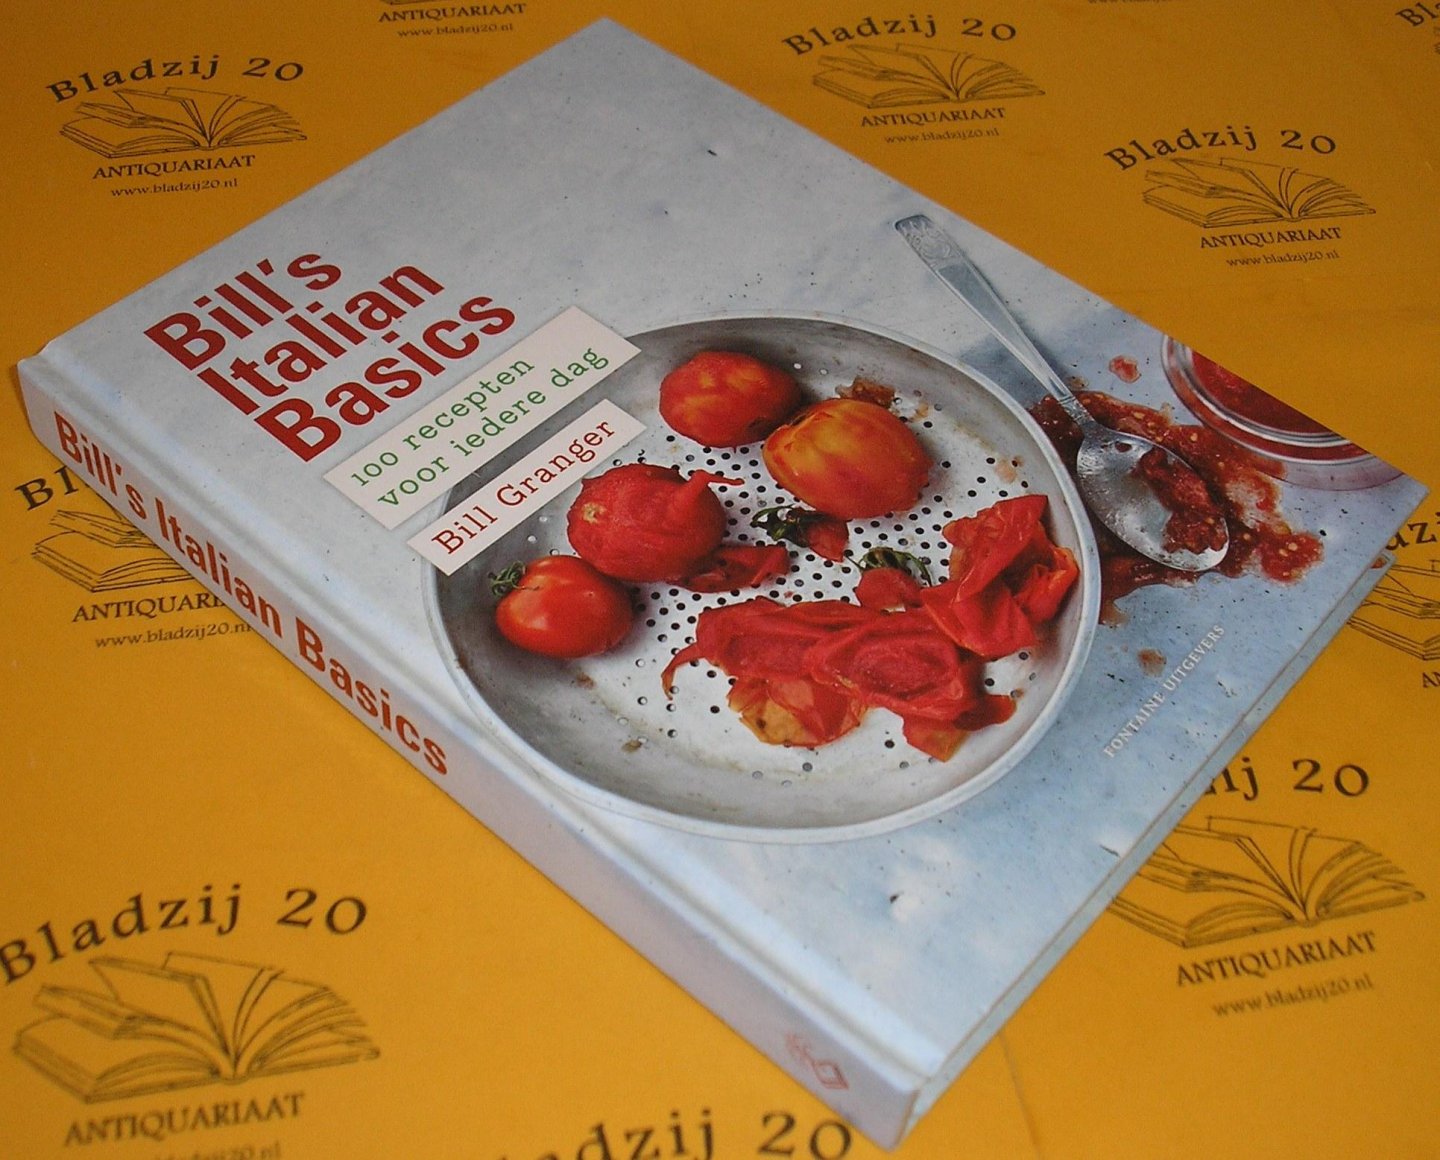 Granger, Bill. - Bill's Italian Basics. 100 recepten voor iedere dag.